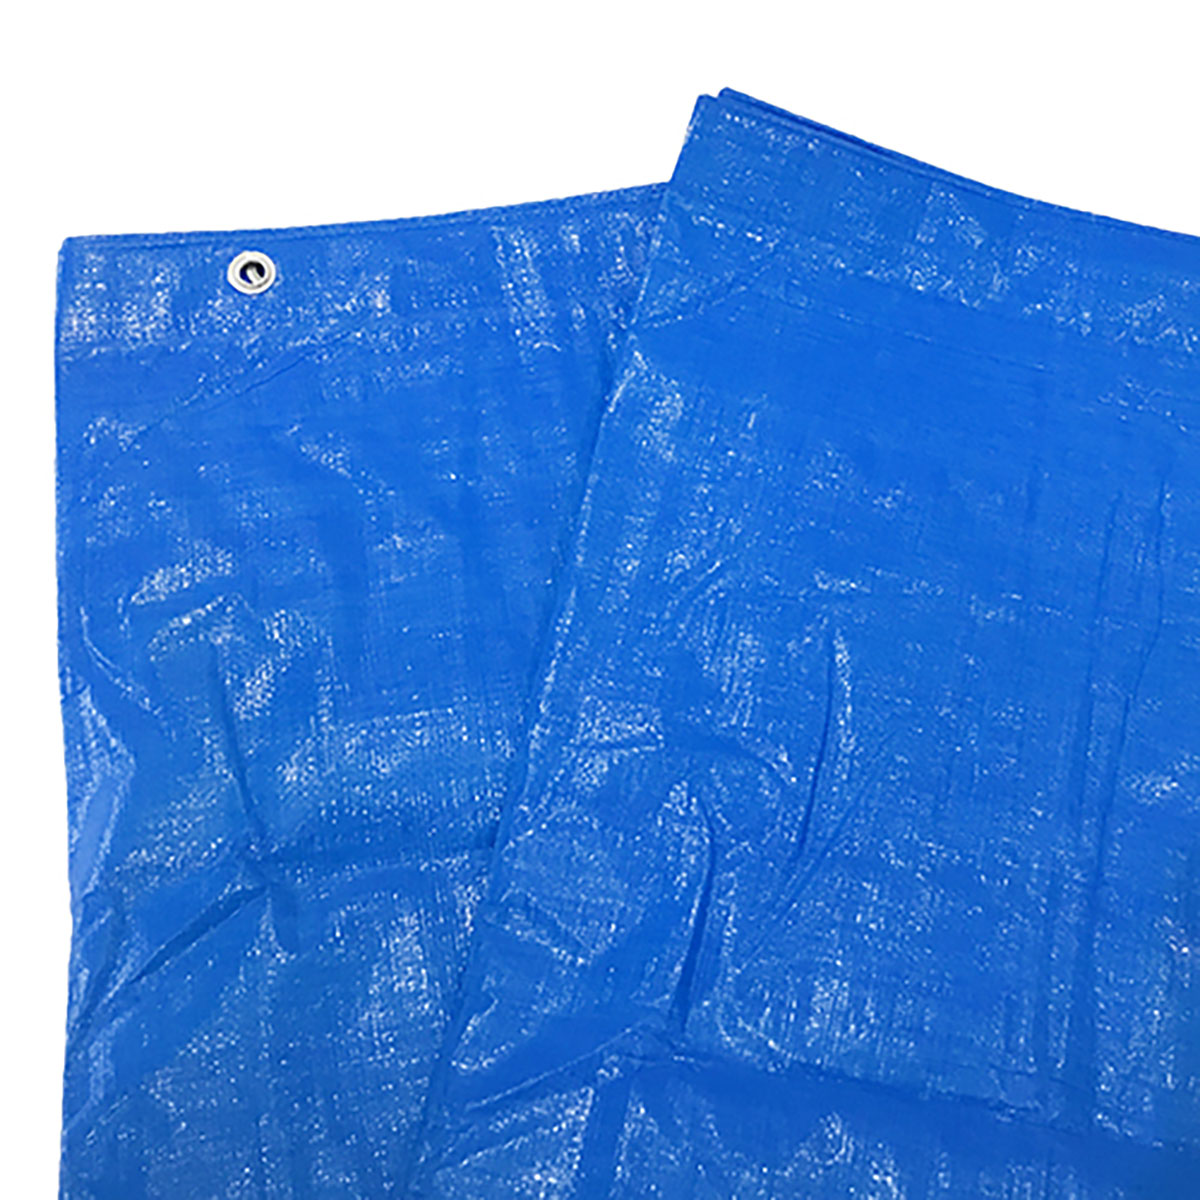 ブルーシート 巾約9.6×長さ約9.9m #3000